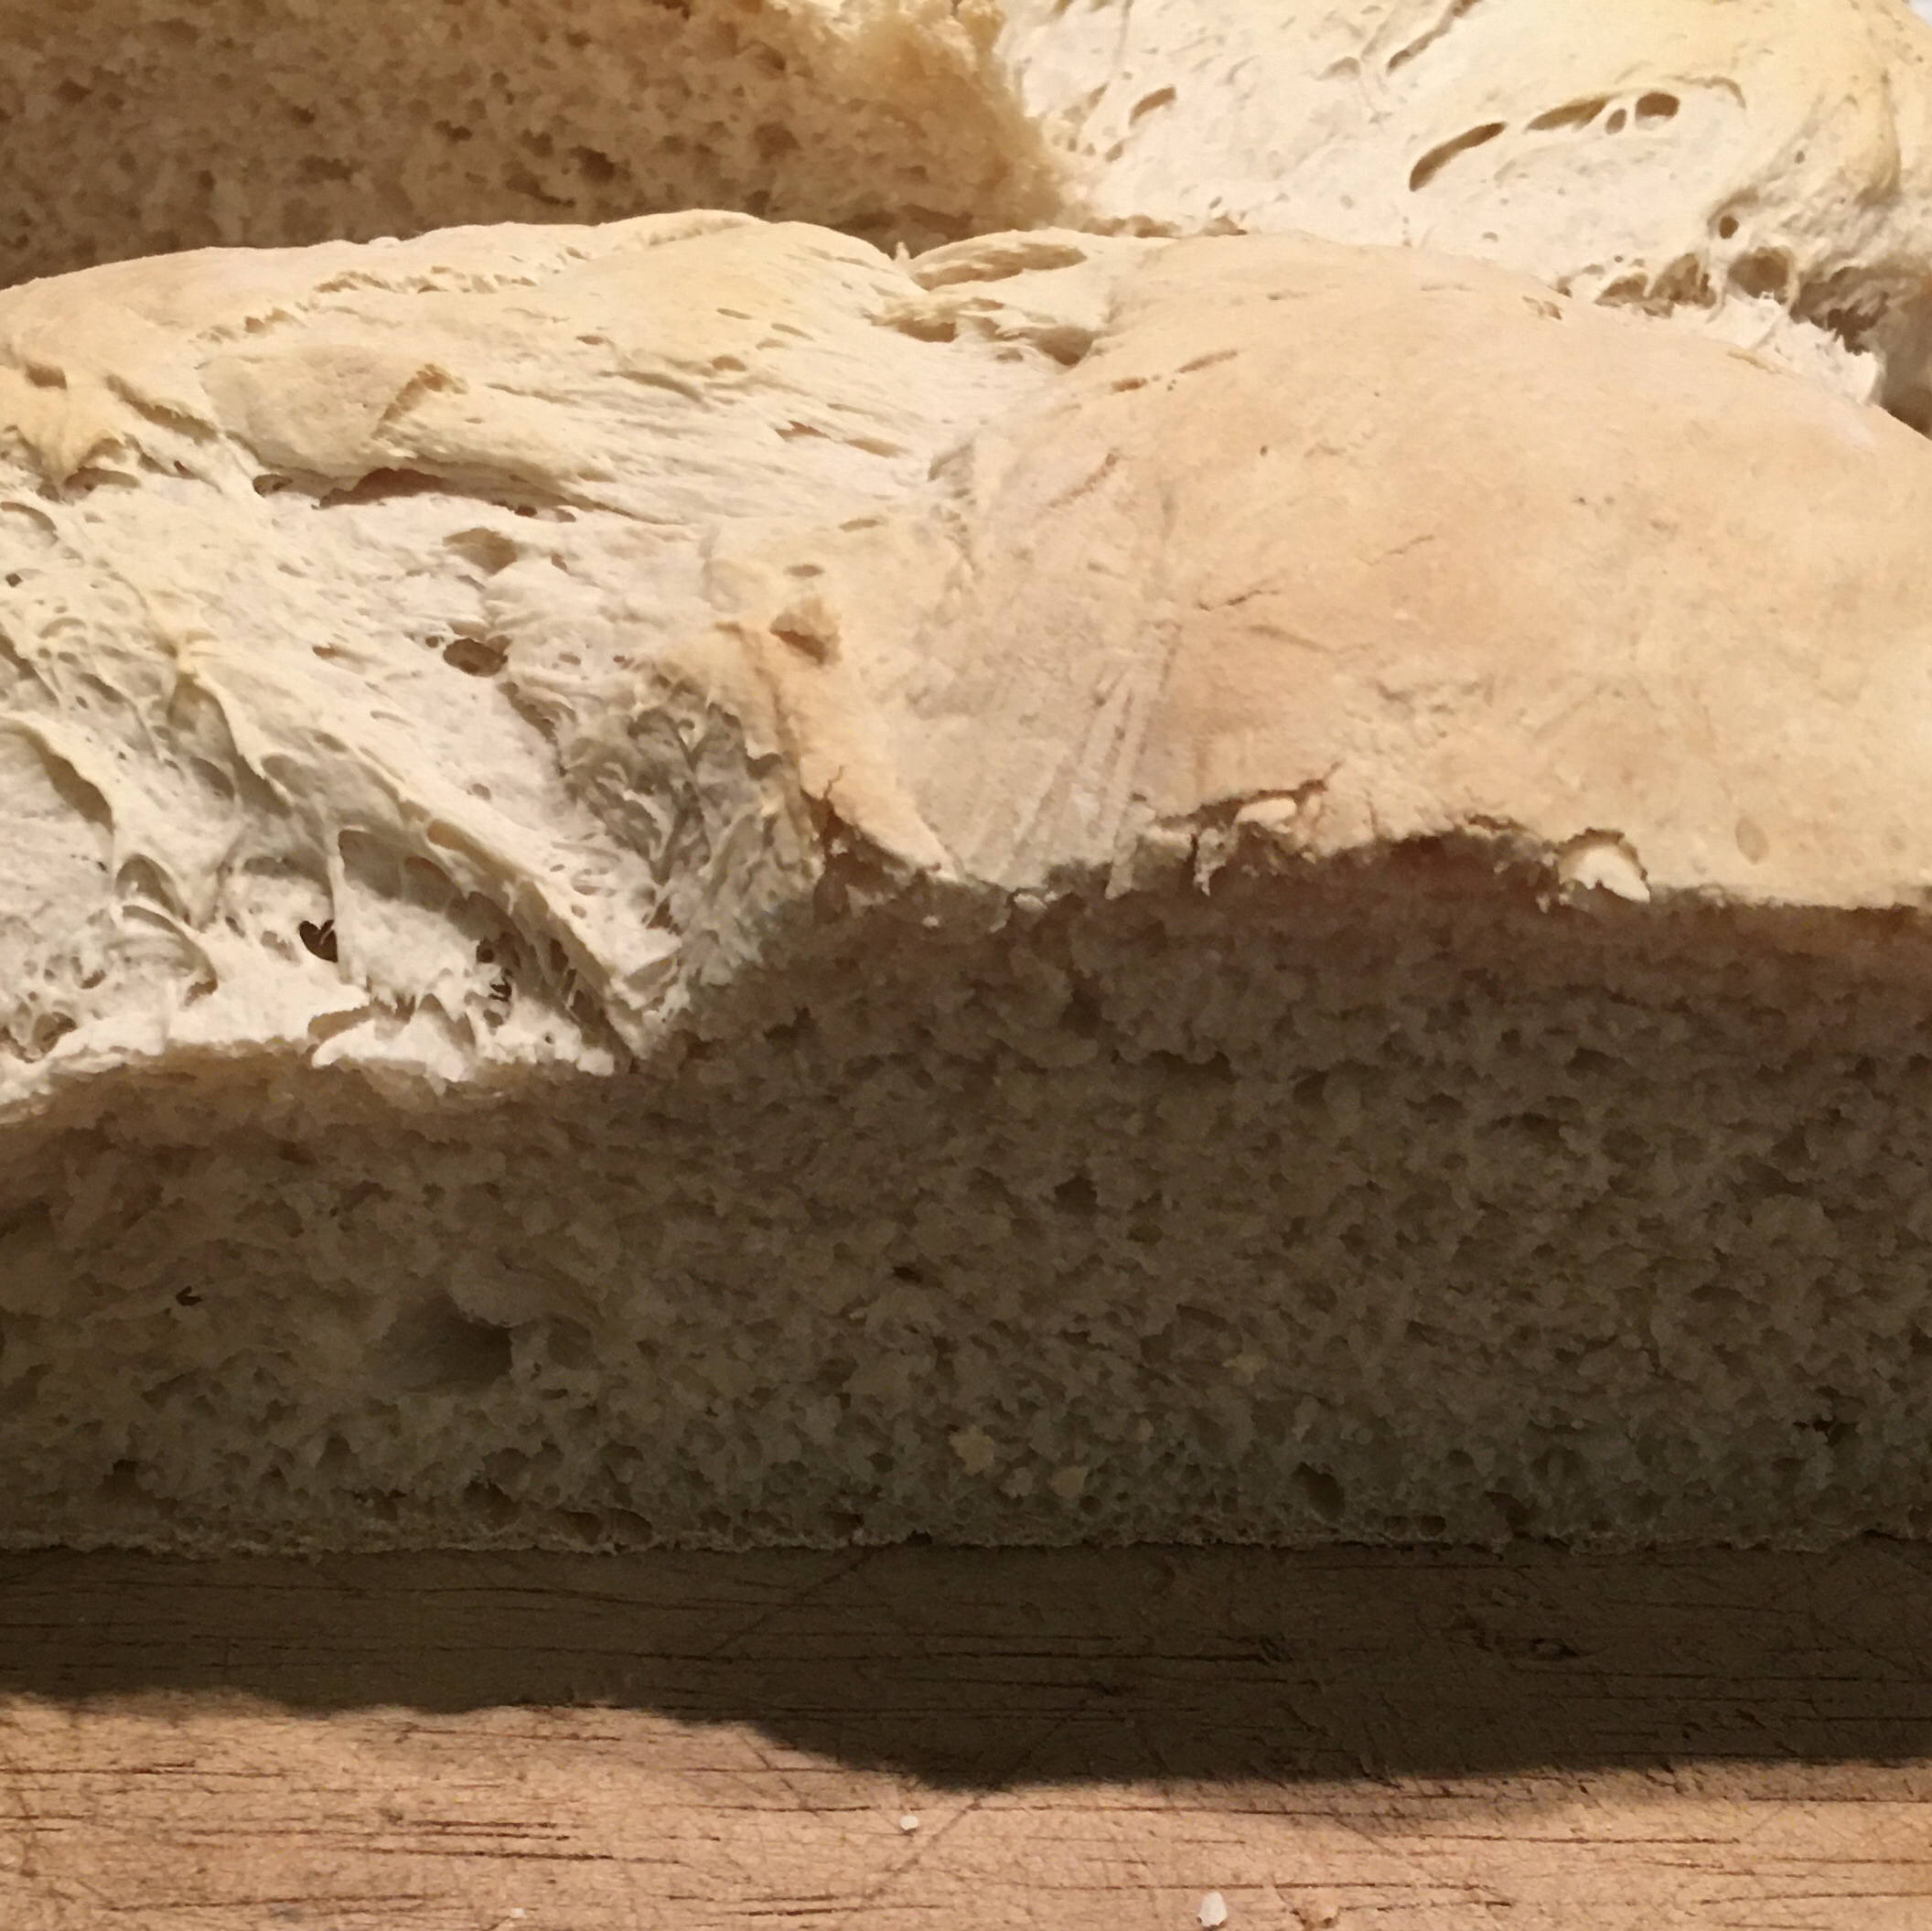 Plain and Simple Sourdough Bread 